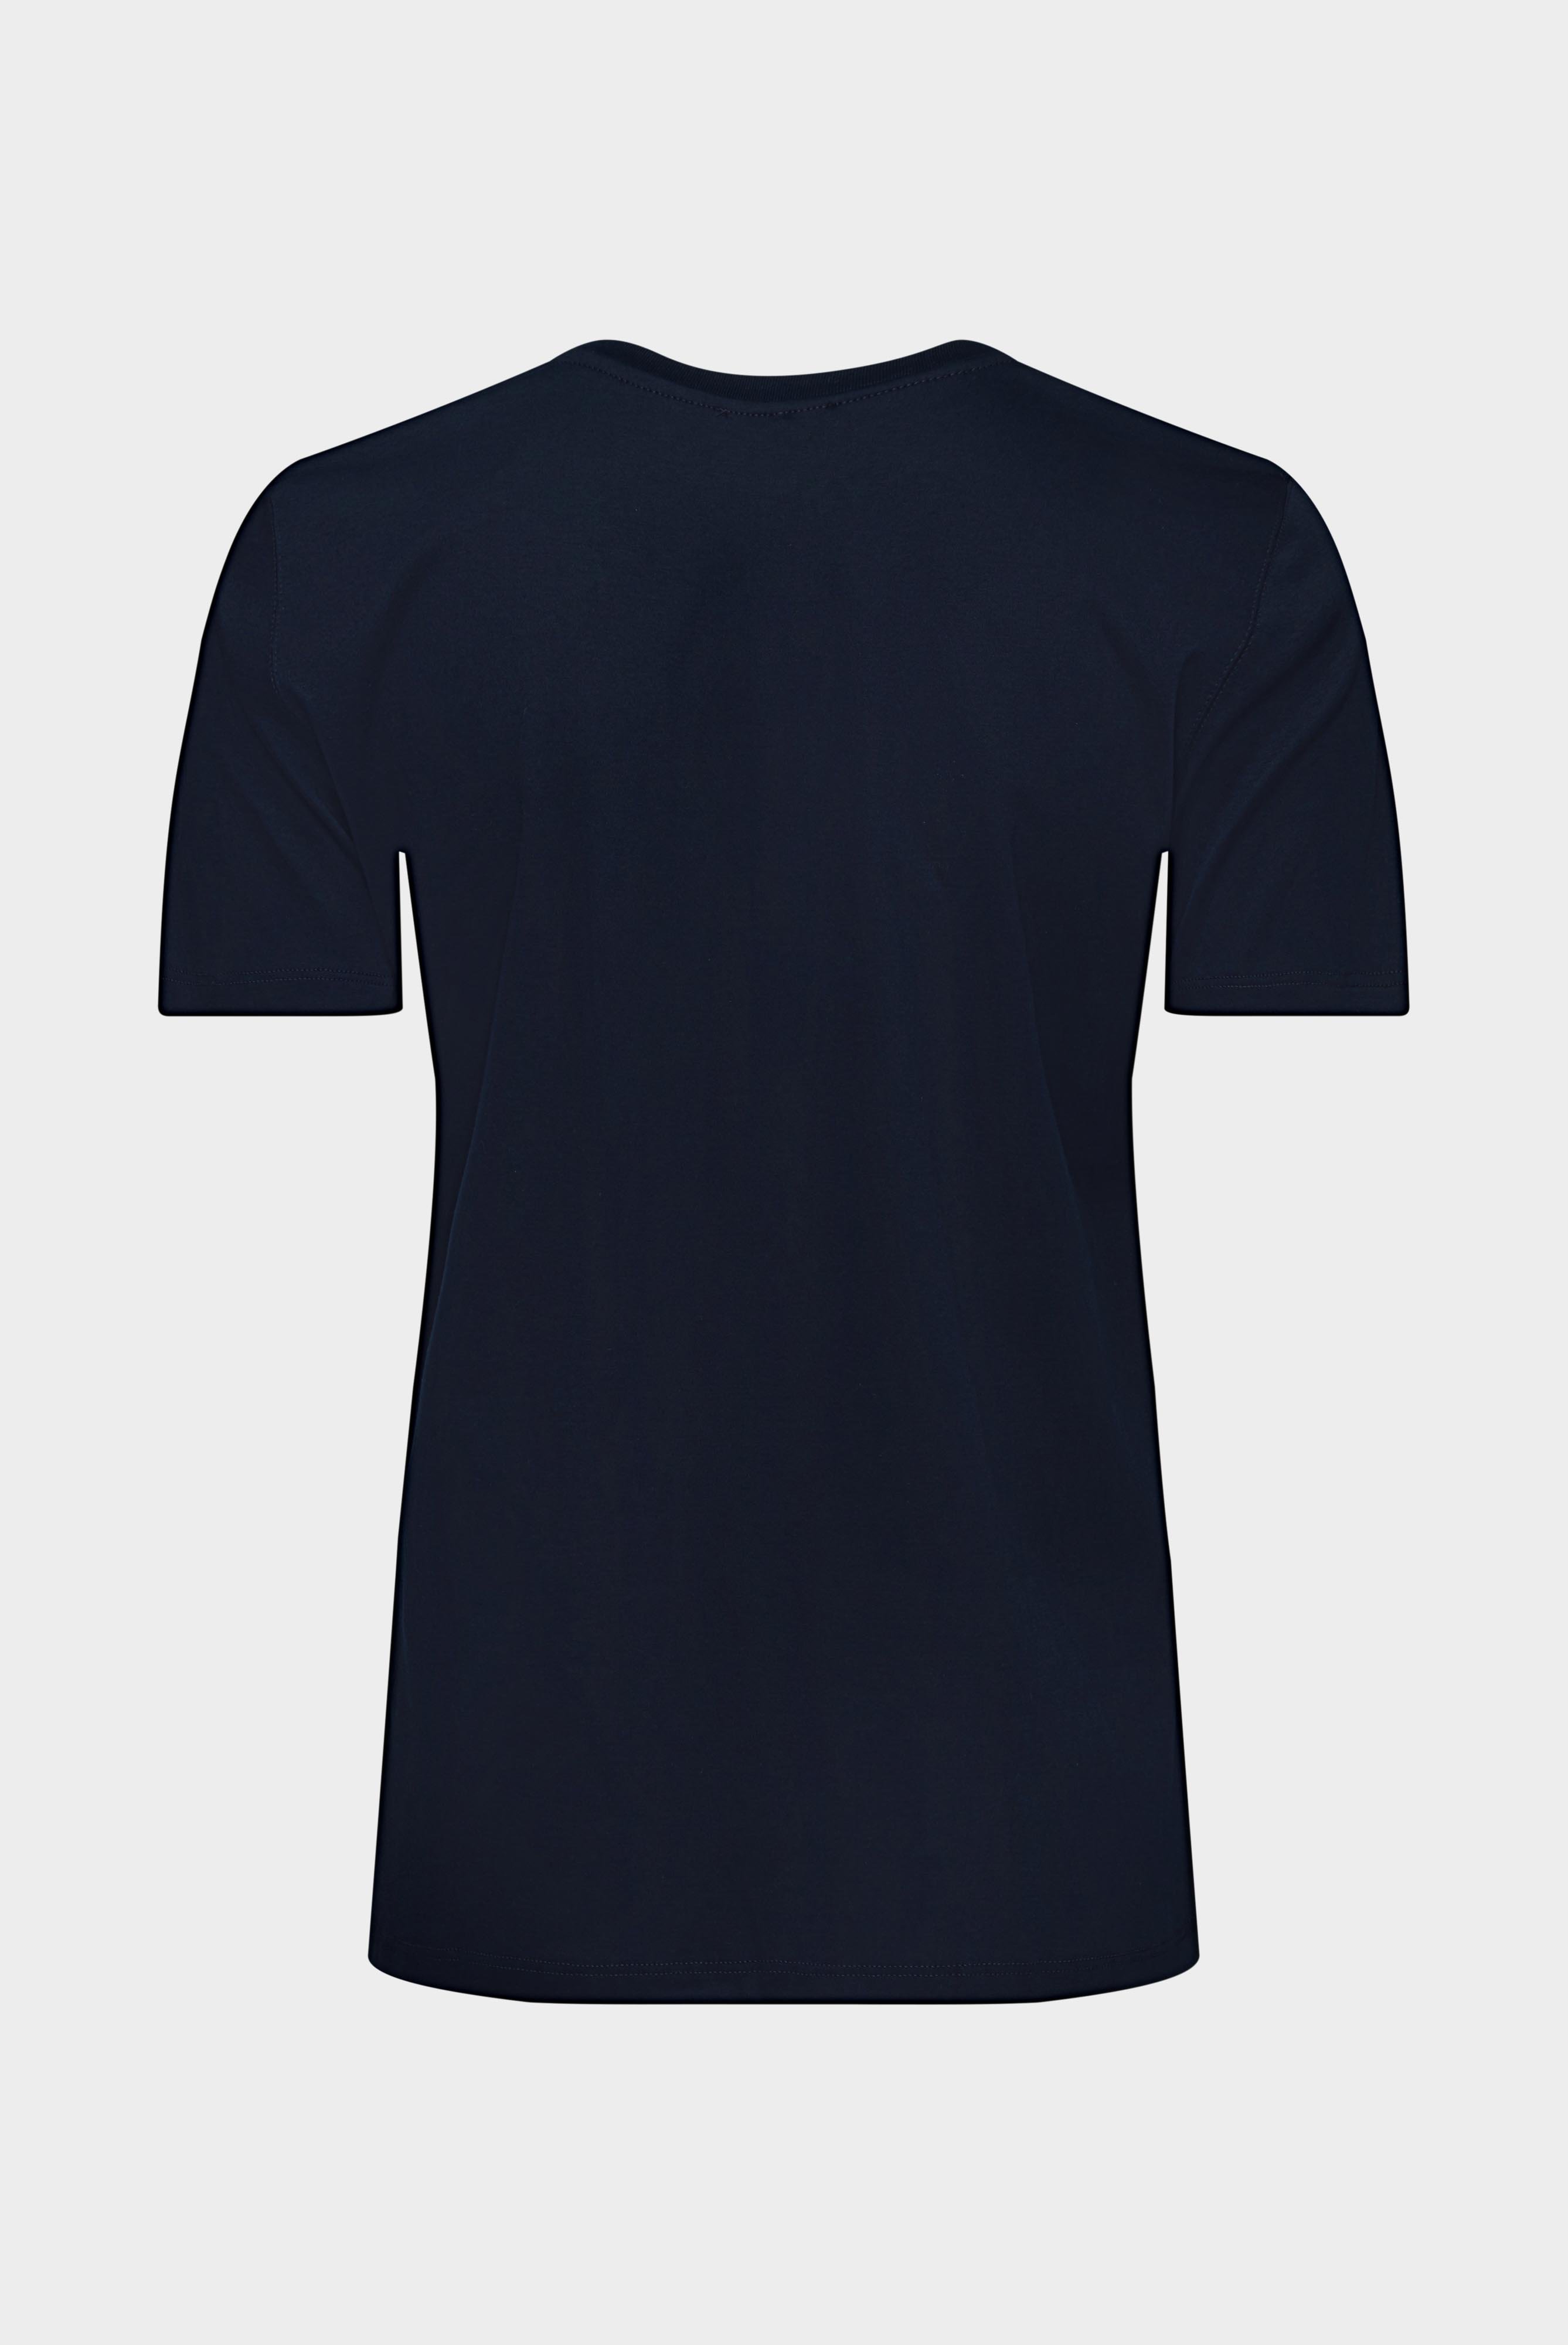 Tops & T-Shirts+Jersey T-Shirt+05.6384.18.180031.790.34